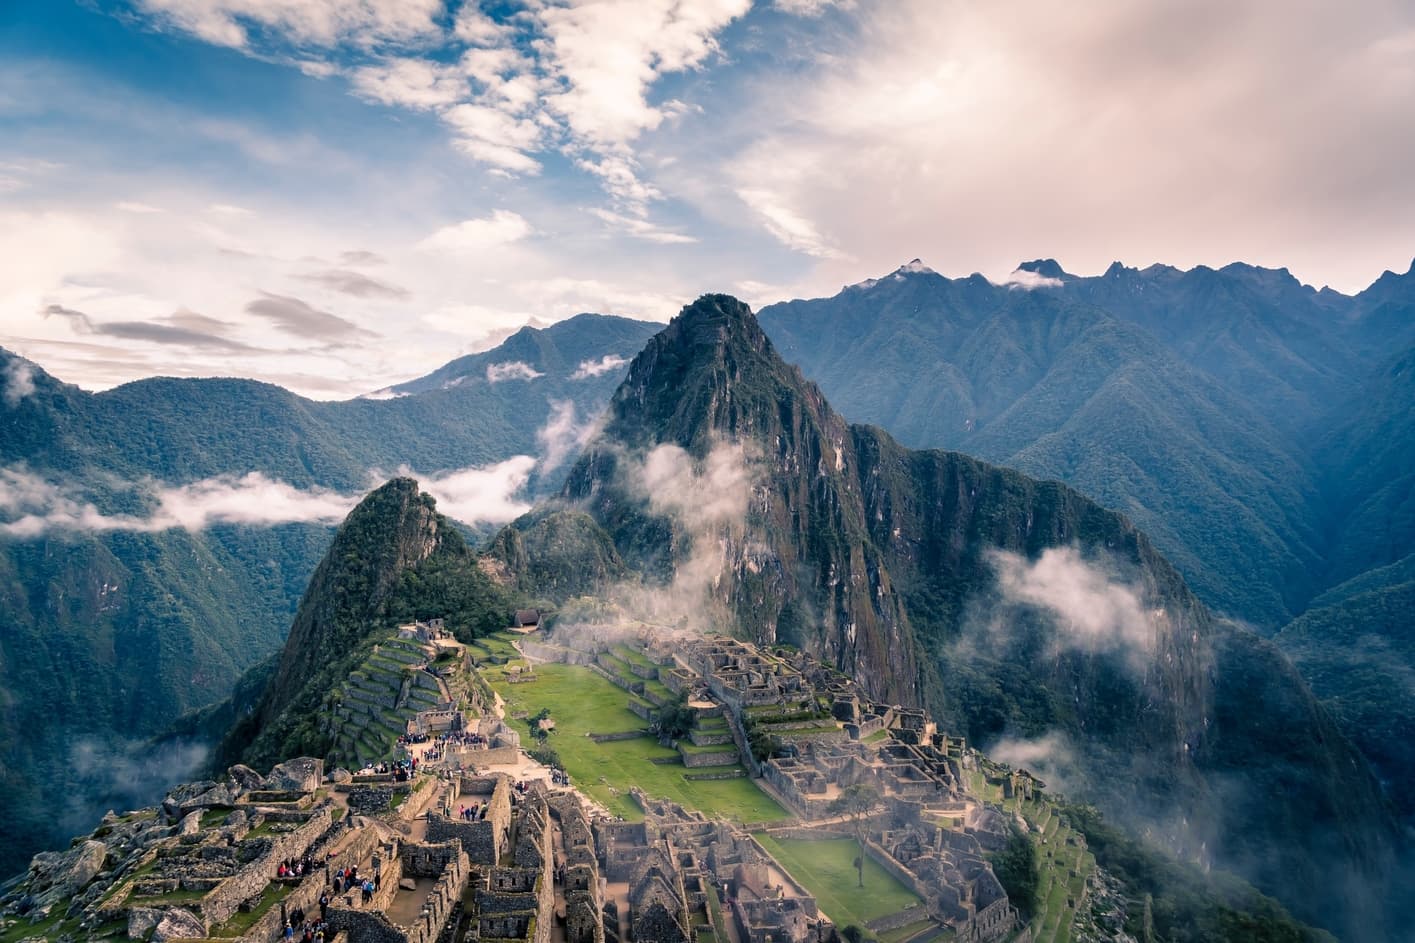 Peru, South America reopening